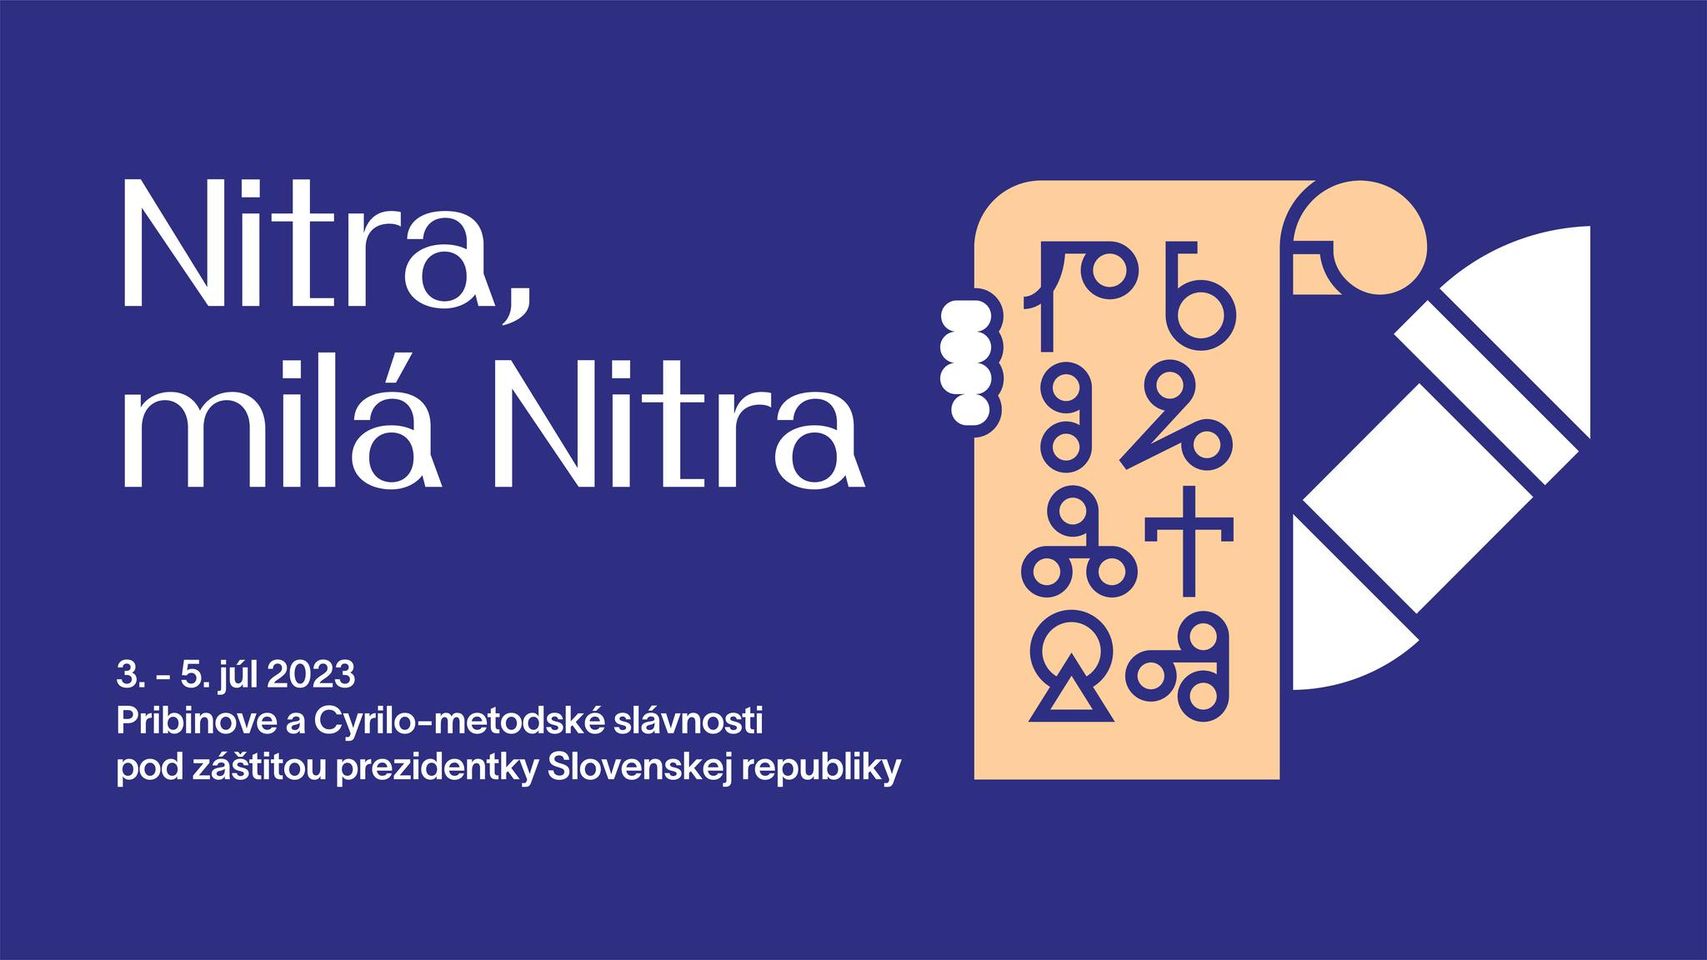 Nitra, milá Nitra 2023